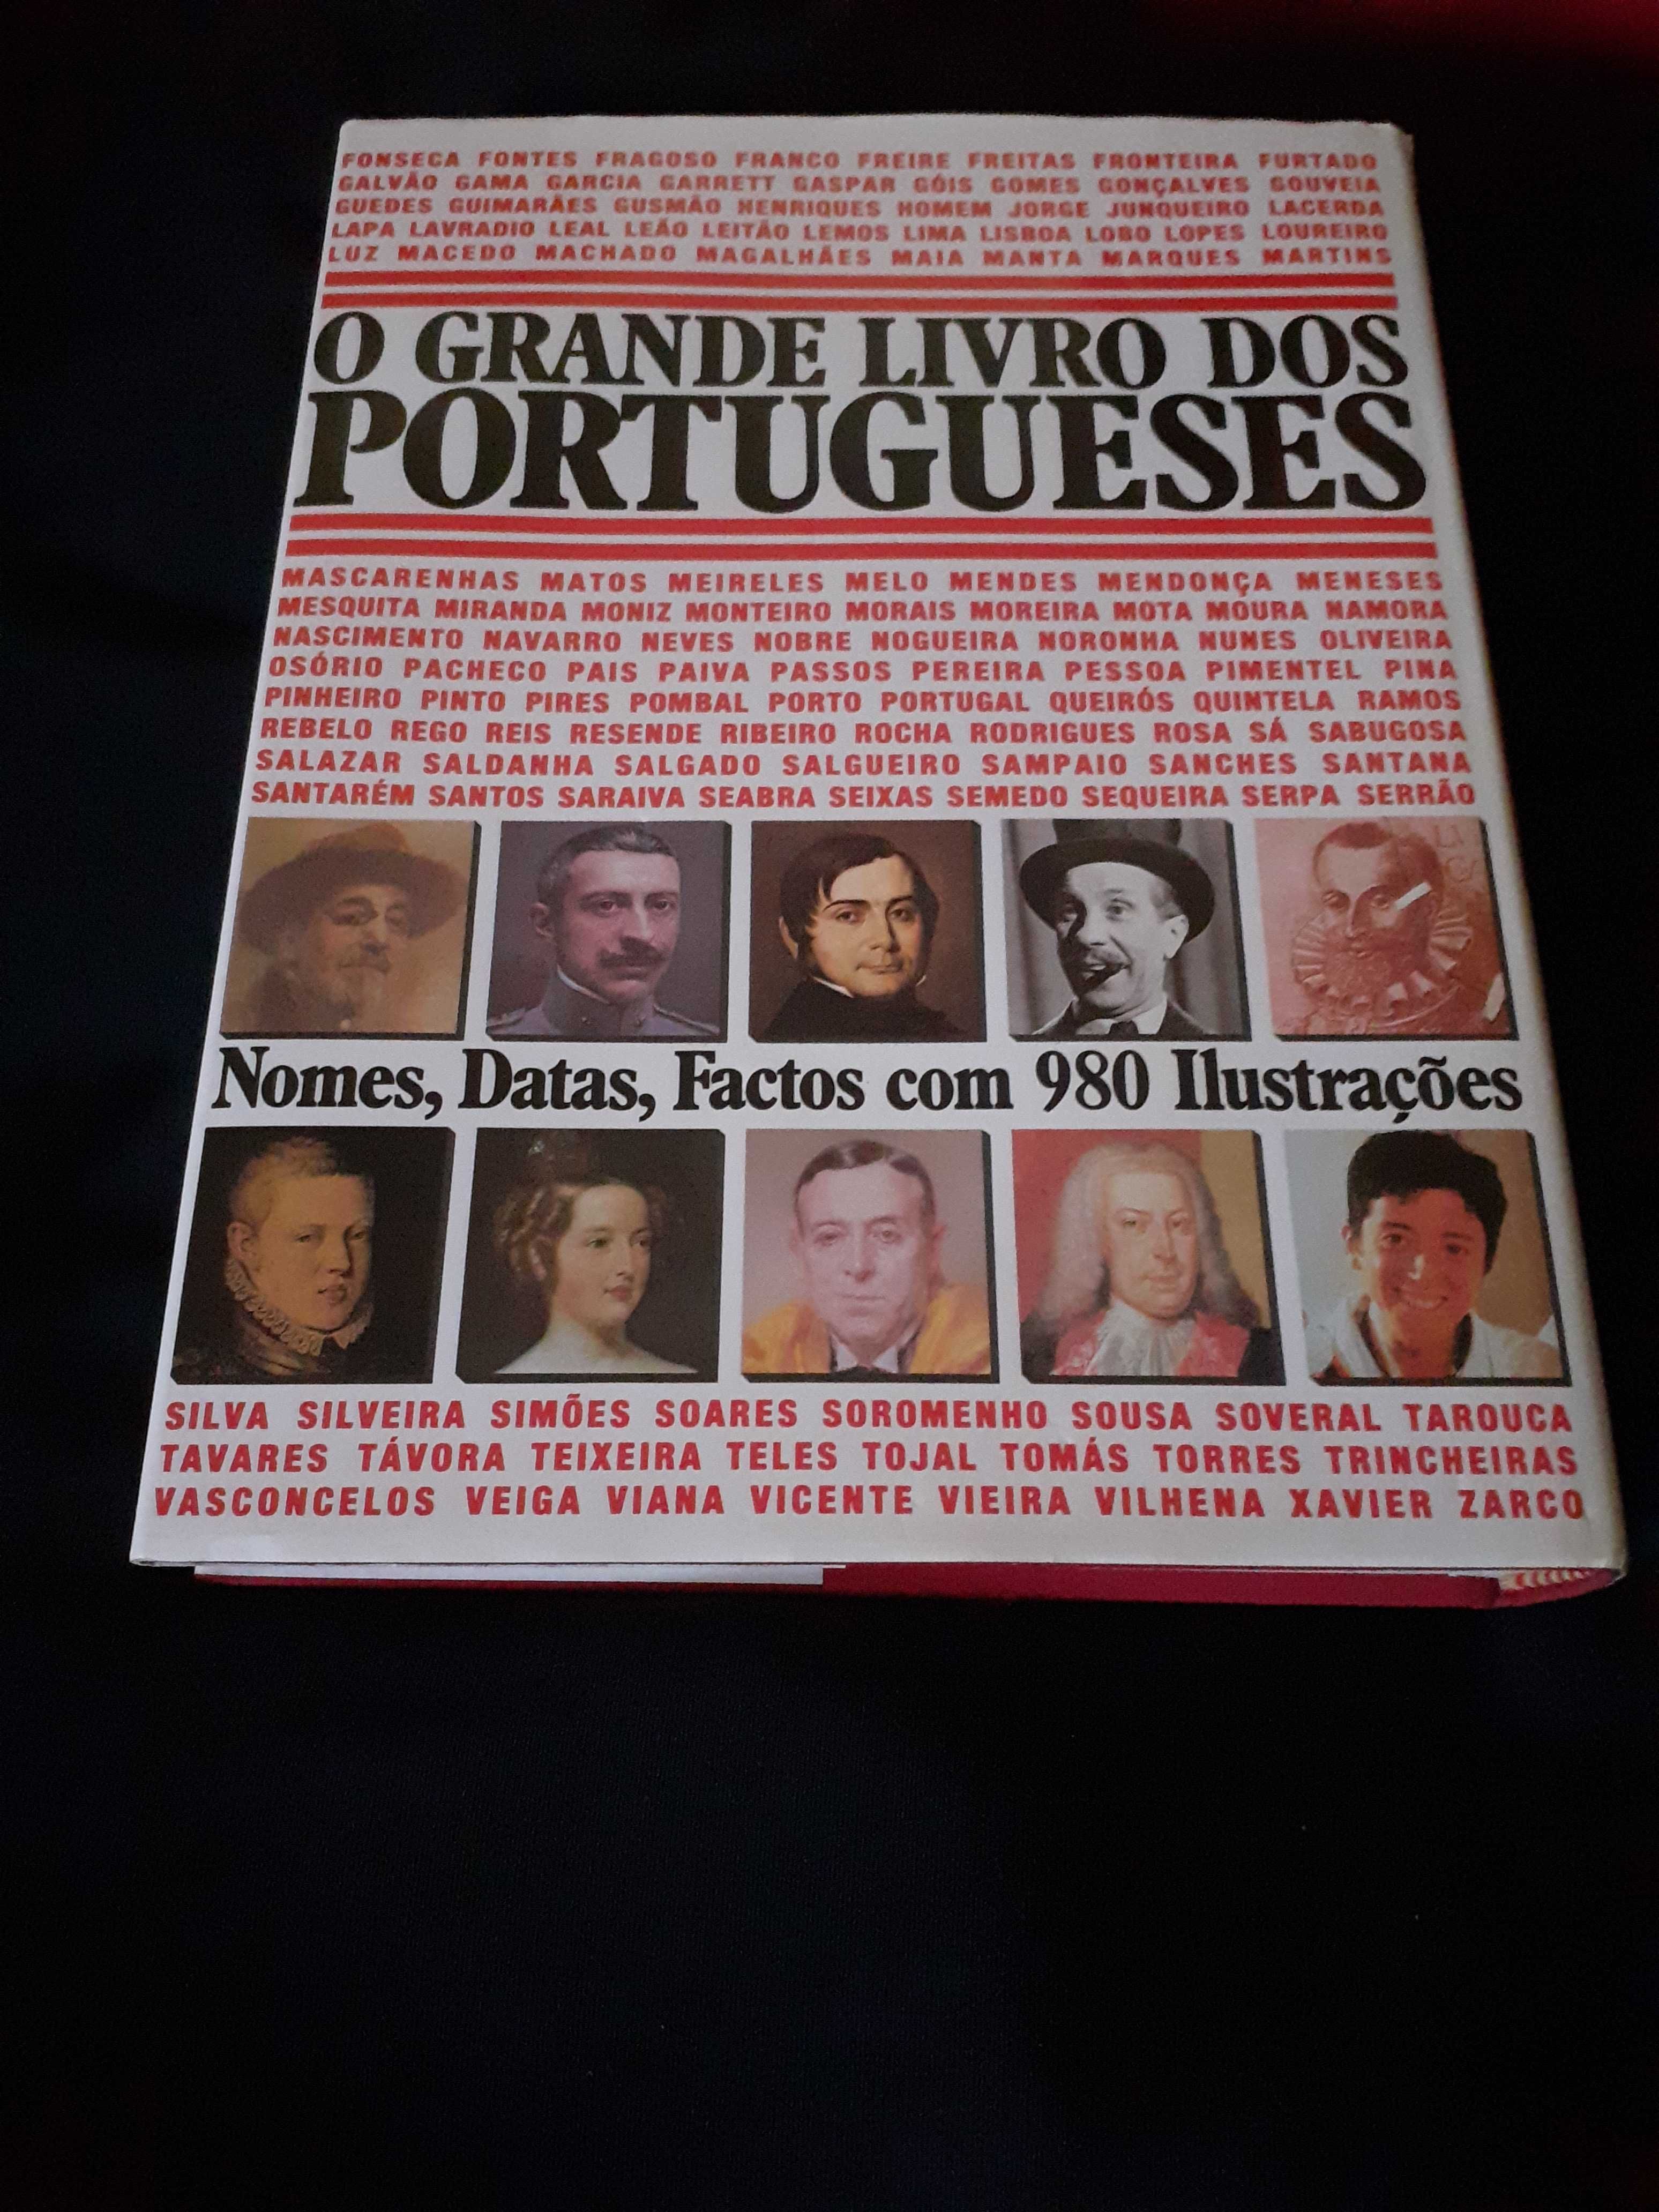 "O Grande Livro dos Portugueses"